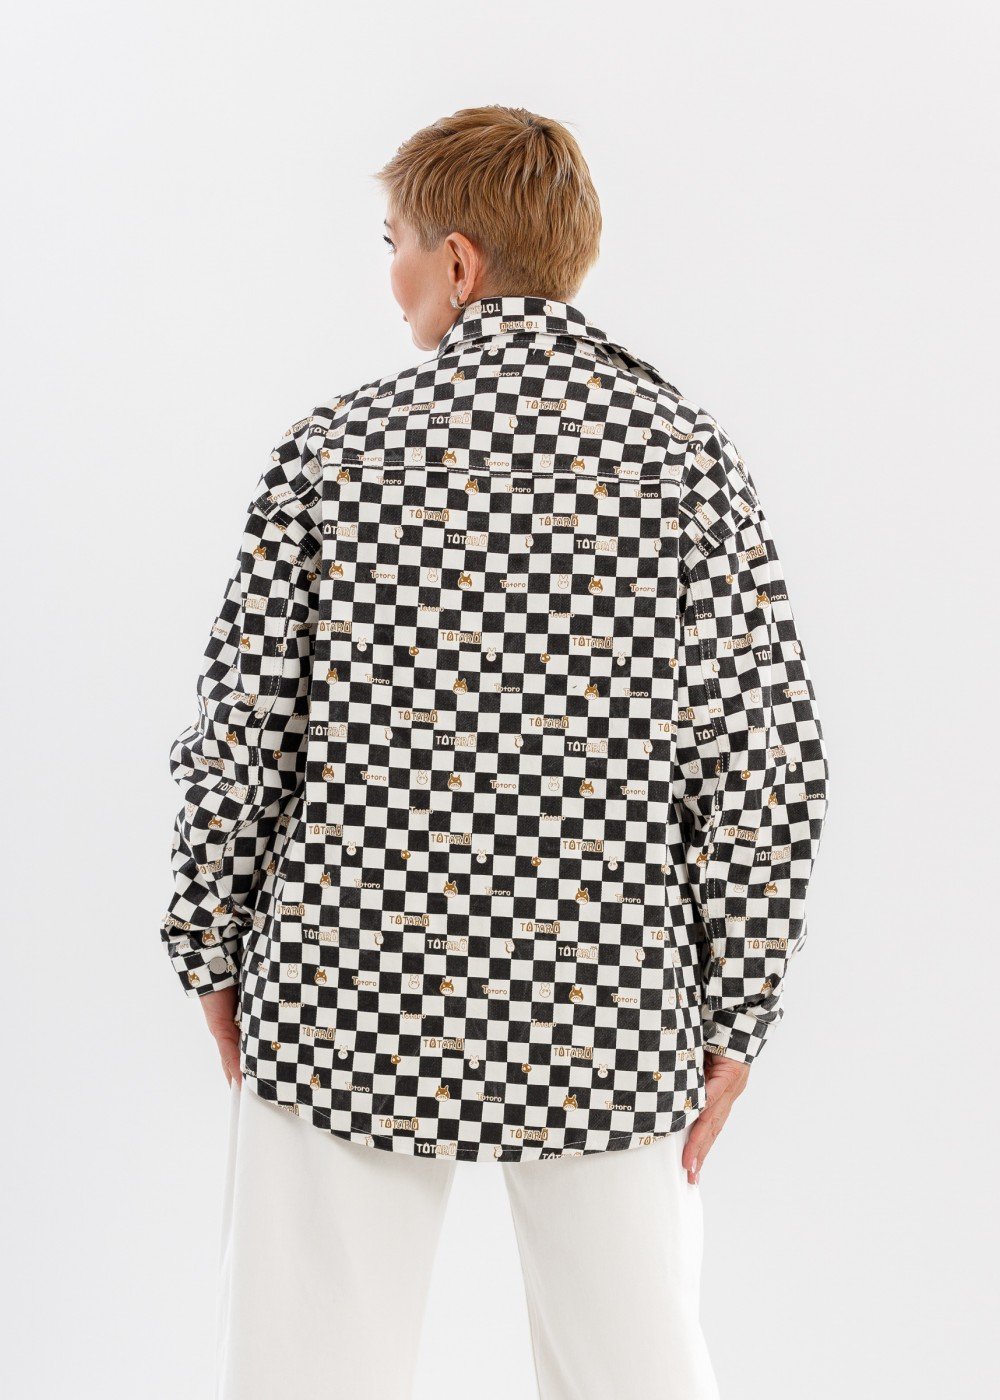 Джинсовая рубашка шахматная со смайлом